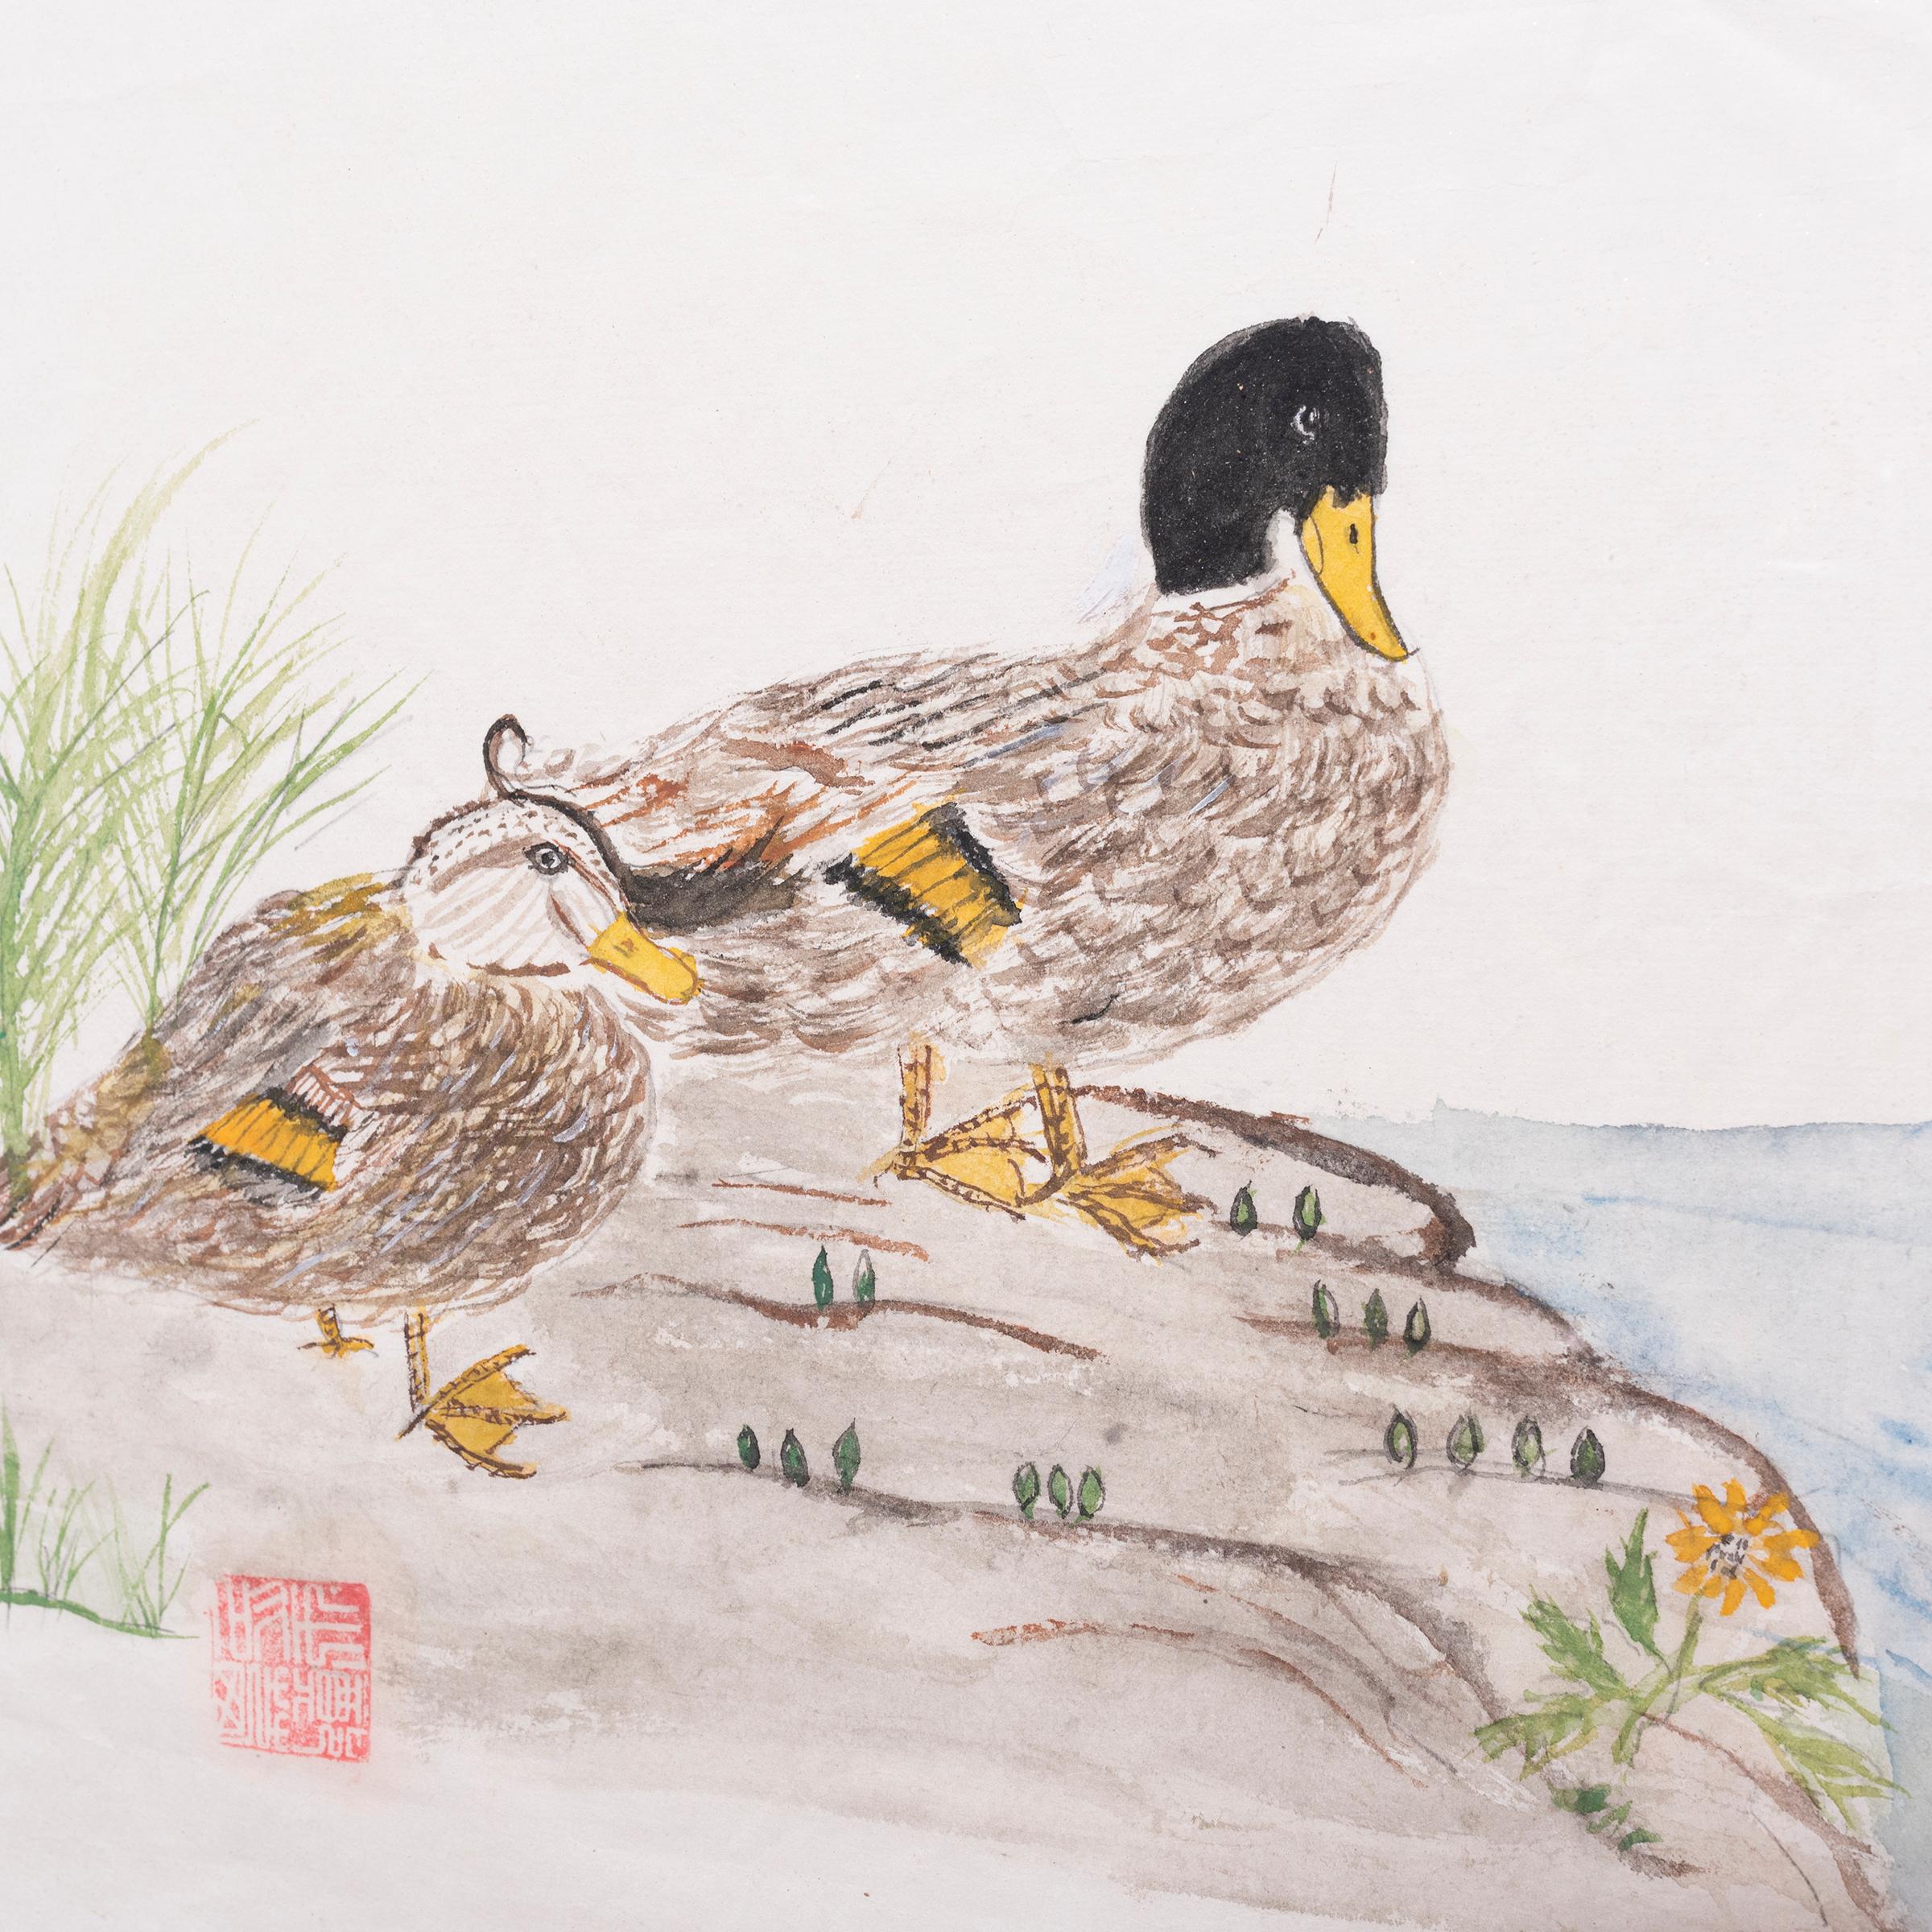 Dieses bezaubernde Aquarell ist im Stil traditioneller Tintenkalligraphie gestaltet und zeigt zwei Enten, die sich an einem Flussufer ausruhen. Das felsige Gelände ist mit hohem Gras und grünen Trieben übersät, und das ruhige Wasser plätschert an